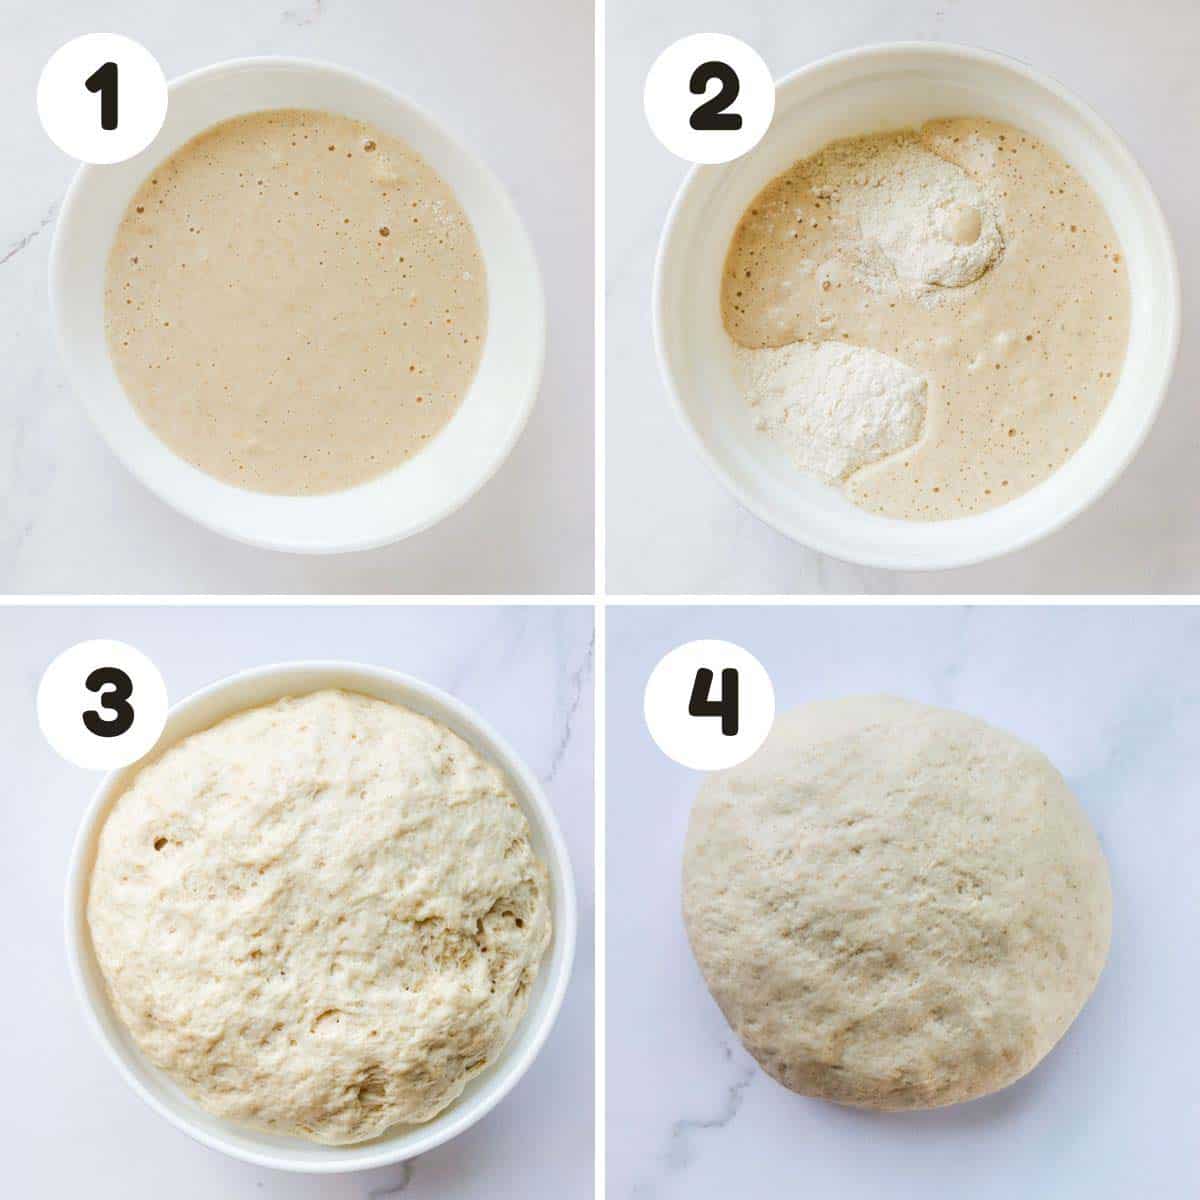 Steps to make the dough.